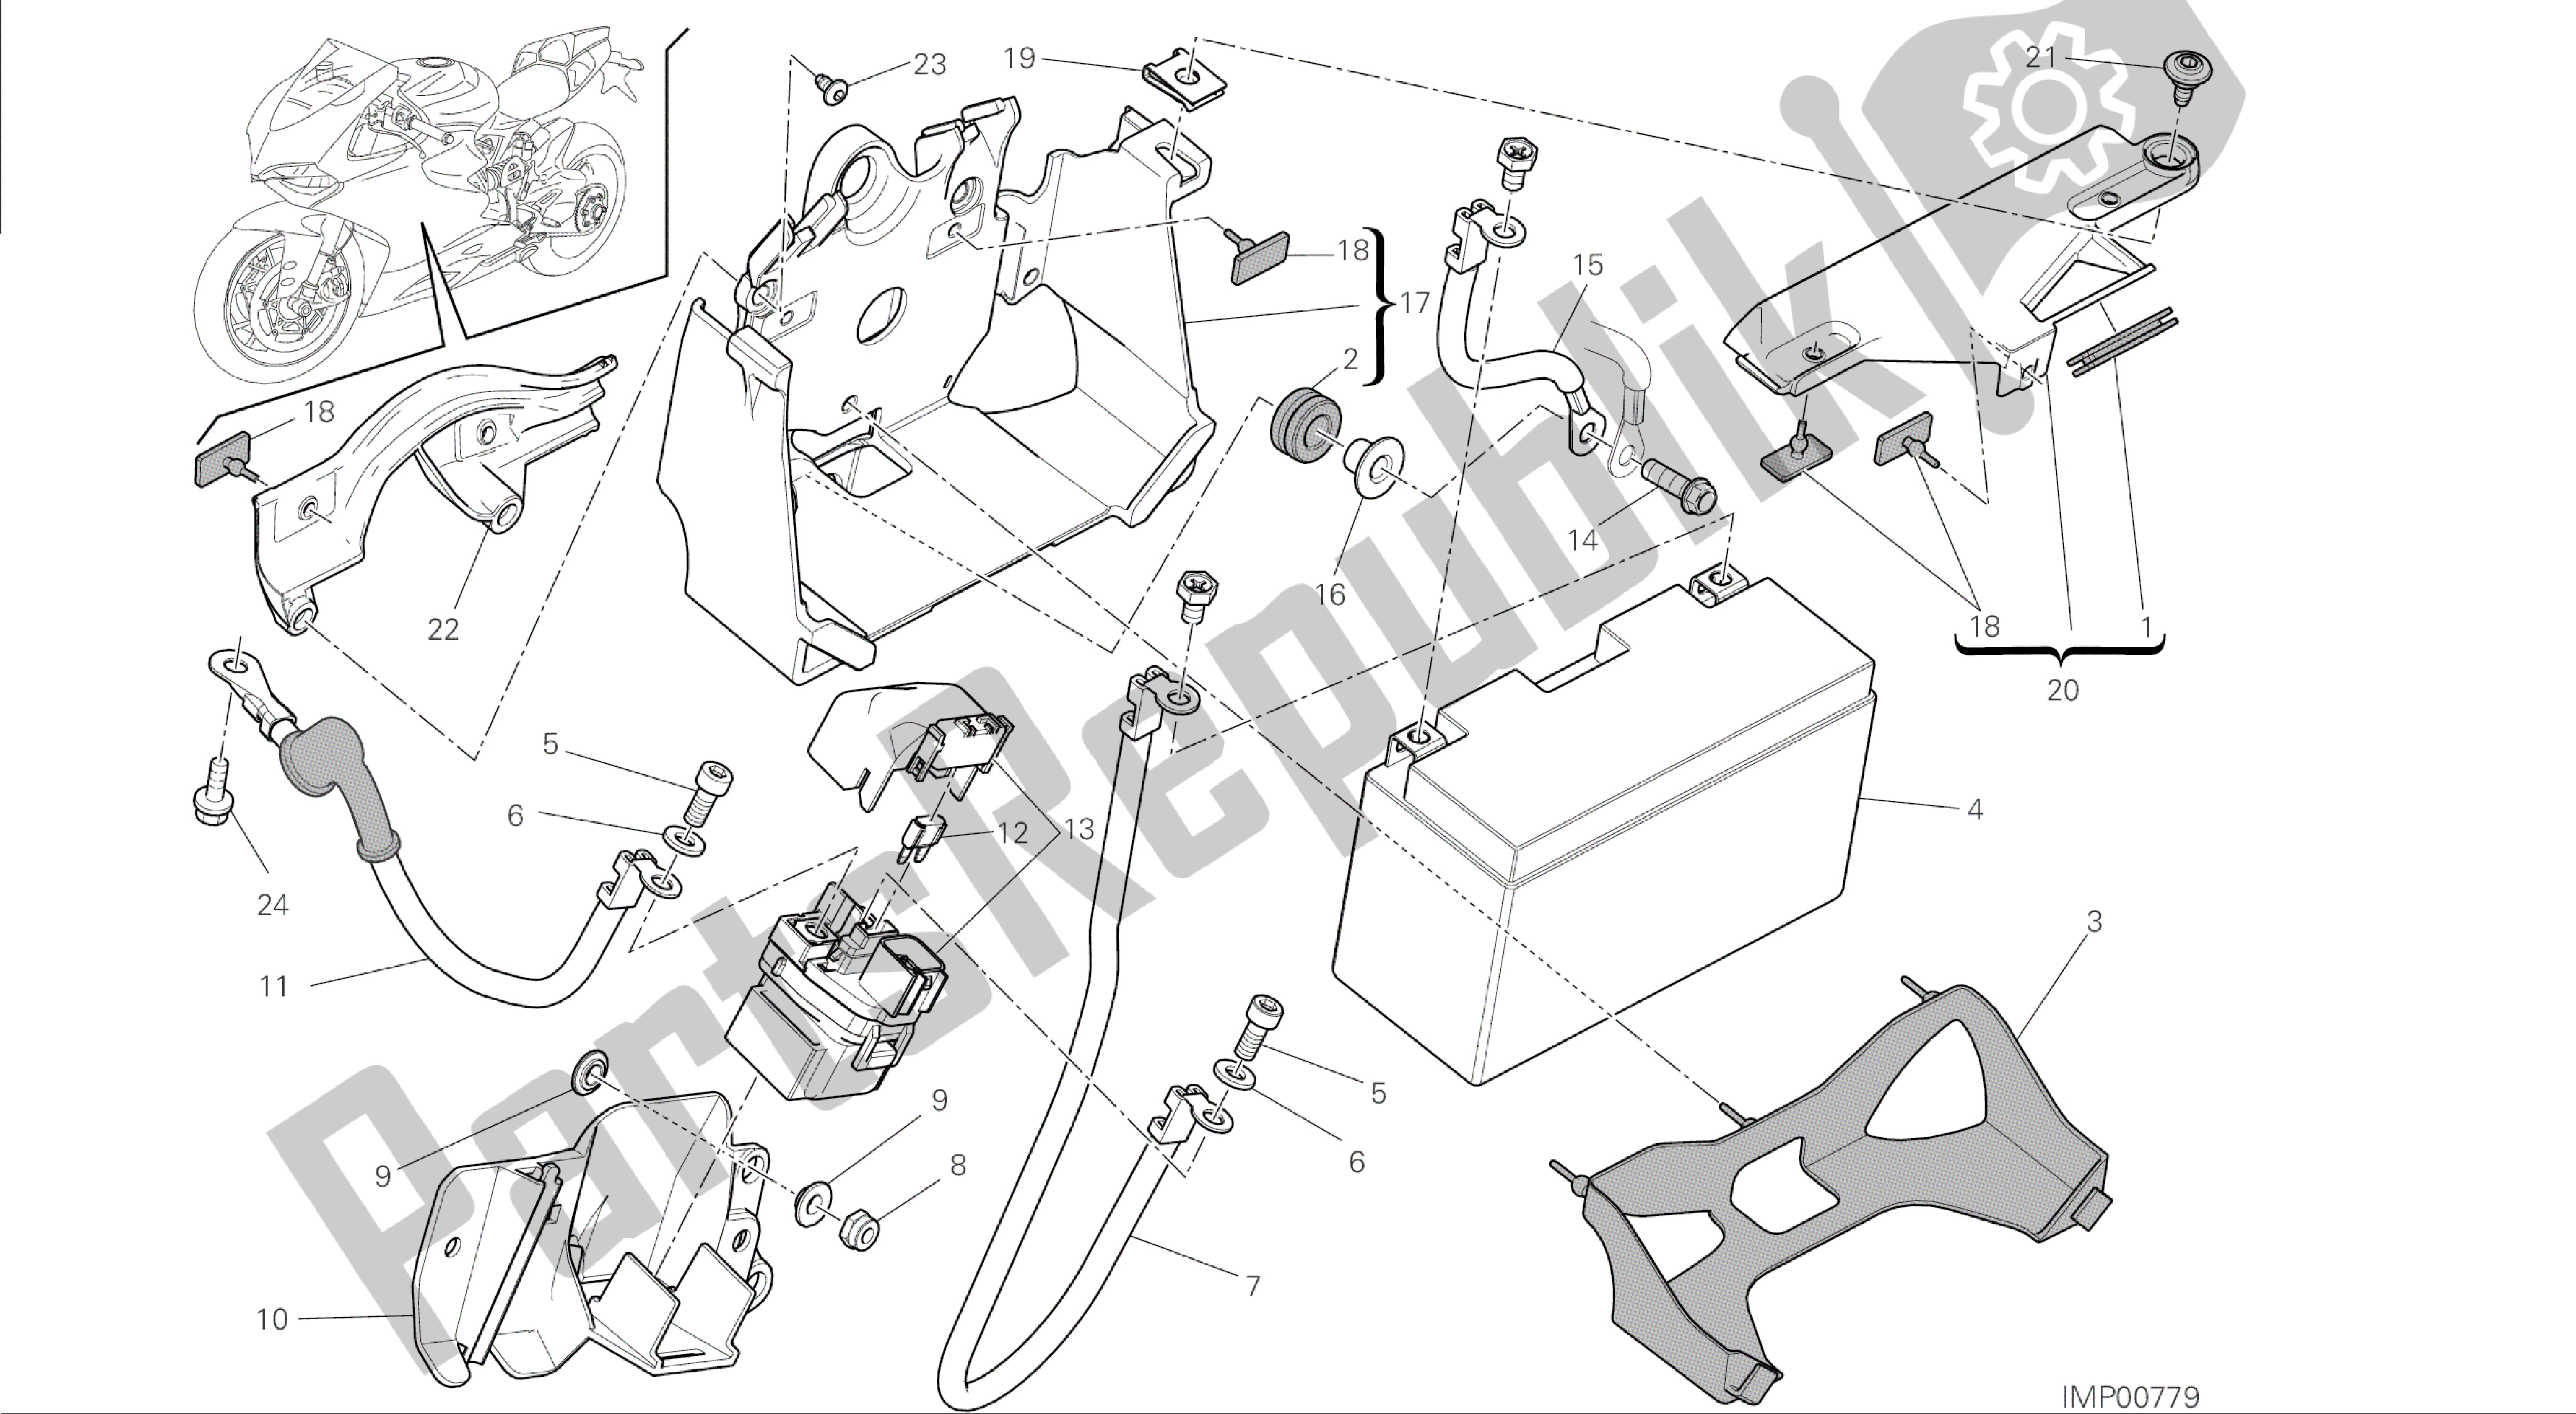 Alle onderdelen voor de Tekening 18a - Batterijhouder [mod: 1199 Abs; Xst: Aus, Bra, Chn, Eur, Fra, Jap] Group Electric van de Ducati Panigale ABS 1199 2014